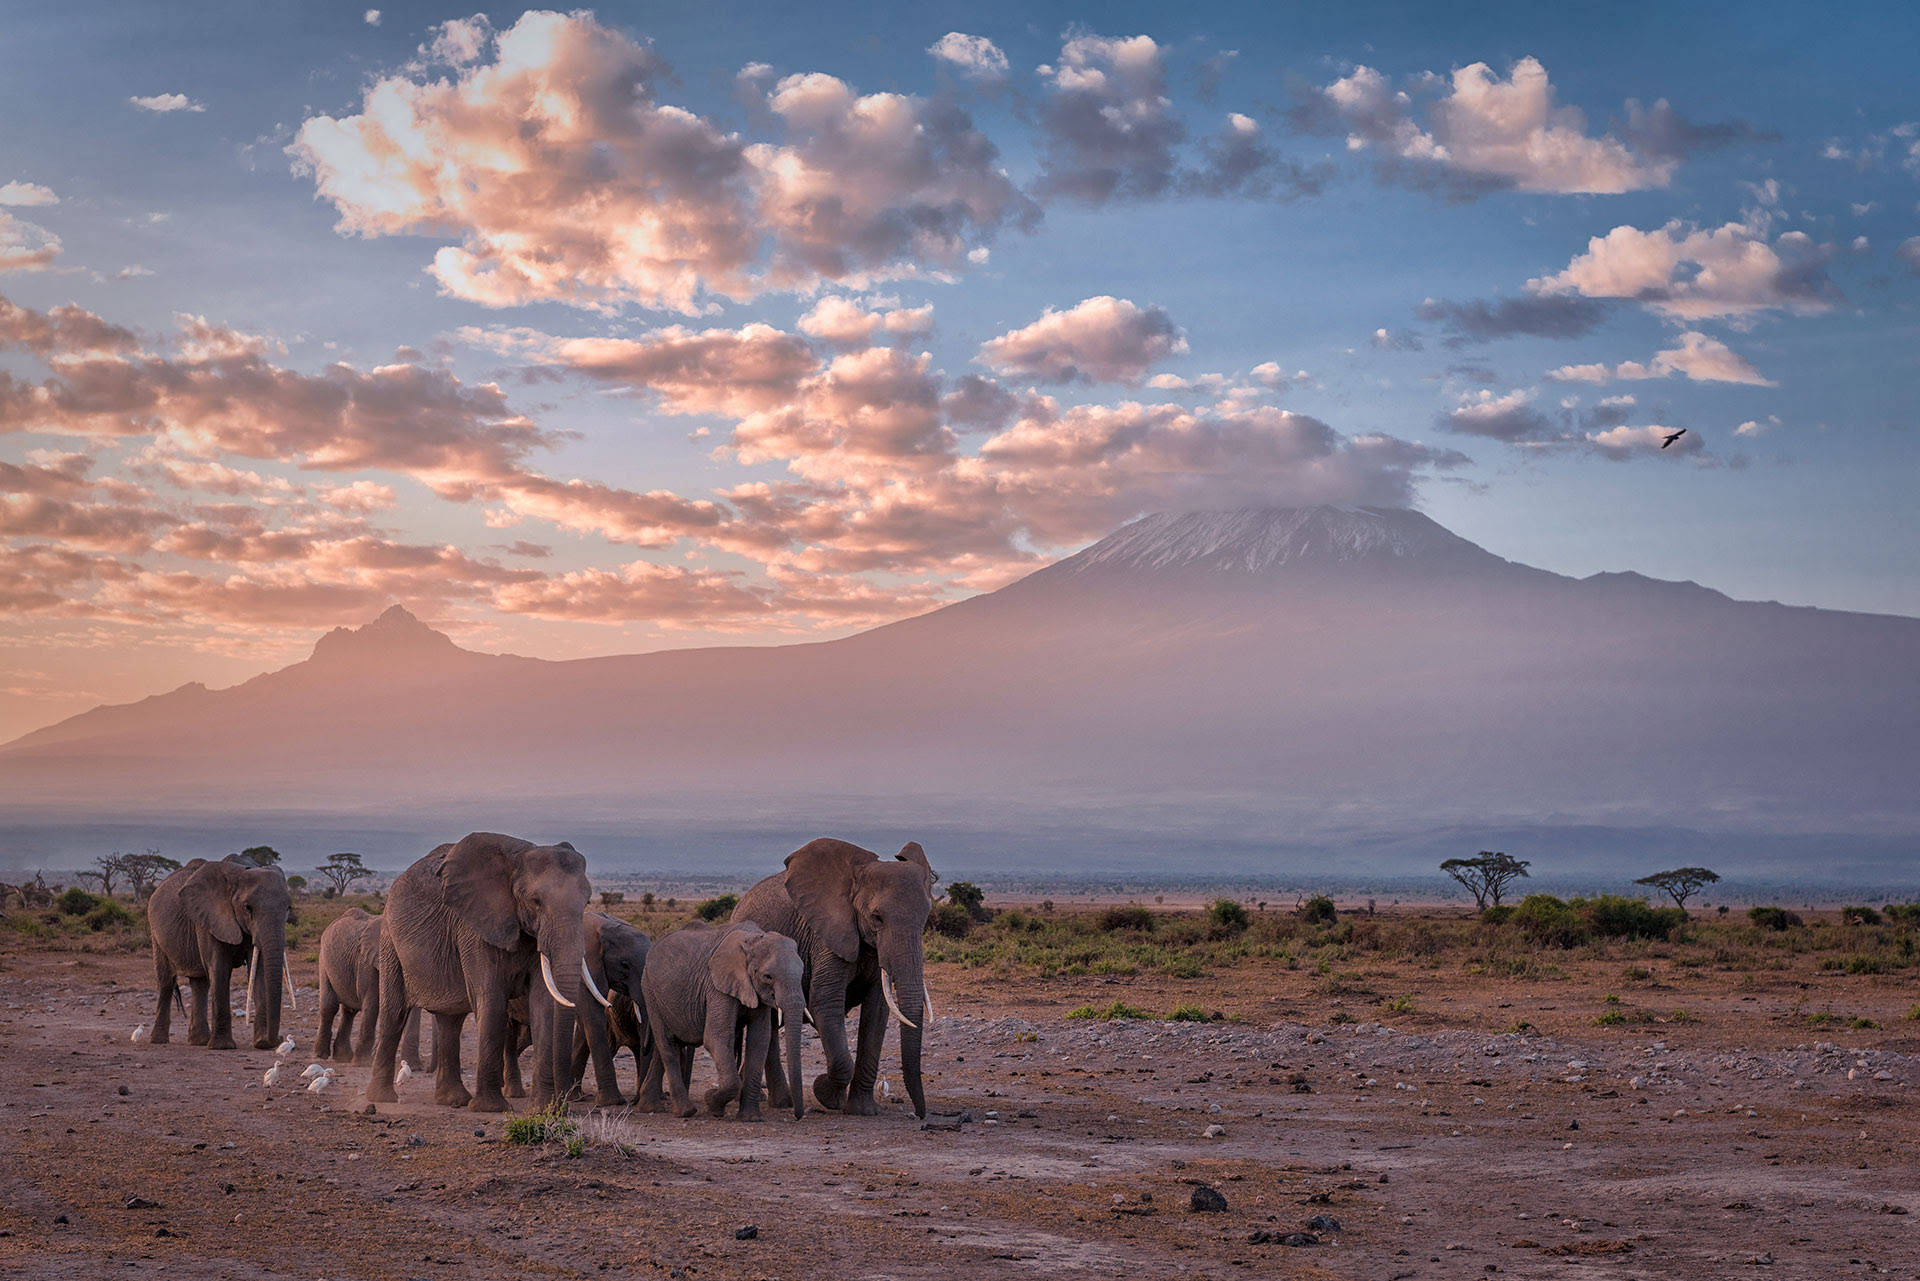 Las nieves del Kilimanjaro fueron inmortalizadas por el escritor Ernest Hemingway (Getty Images)